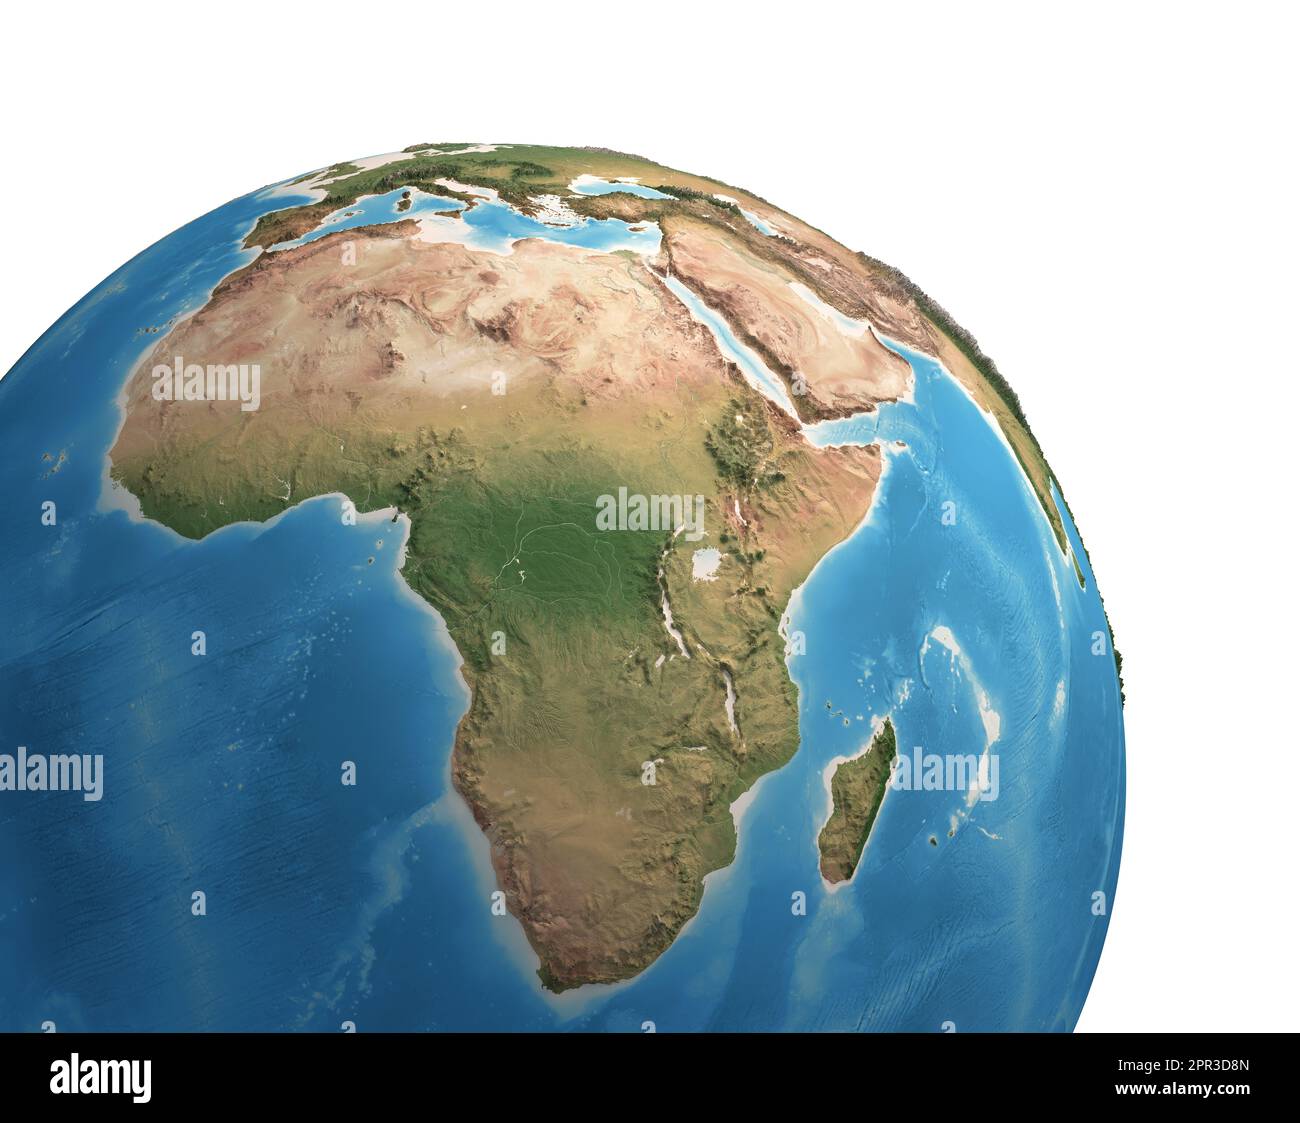 Vista satellitare ad alta risoluzione del pianeta Terra, focalizzata sull'Africa - illustrazione 3D, elementi di questa immagine forniti dalla NASA. Foto Stock